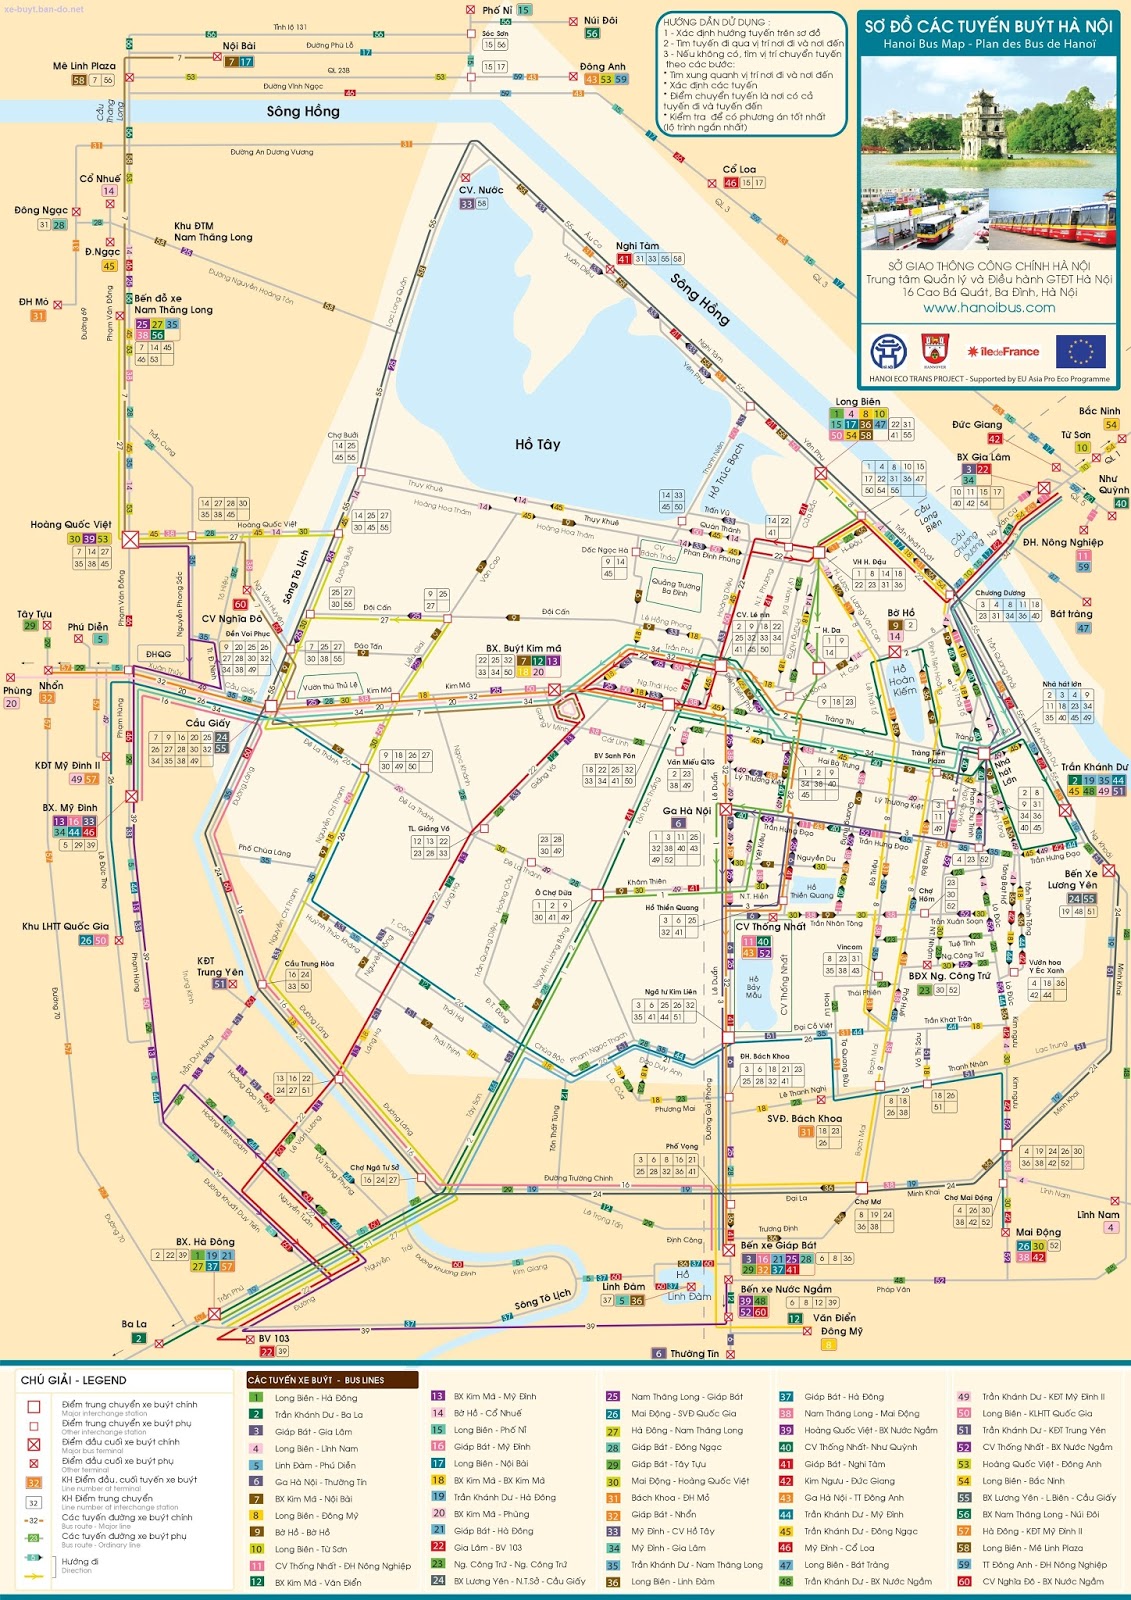 Bản đồ xe buýt Hà Nội là công cụ hỗ trợ di chuyển tuyệt vời cho các bạn đang sinh sống và làm việc ở thủ đô. Với những thông tin mới nhất về tuyến xe và lịch trình di chuyển, quý khách có thể dễ dàng điều chỉnh kế hoạch và lựa chọn tuyến đường phù hợp với nhu cầu của mình.